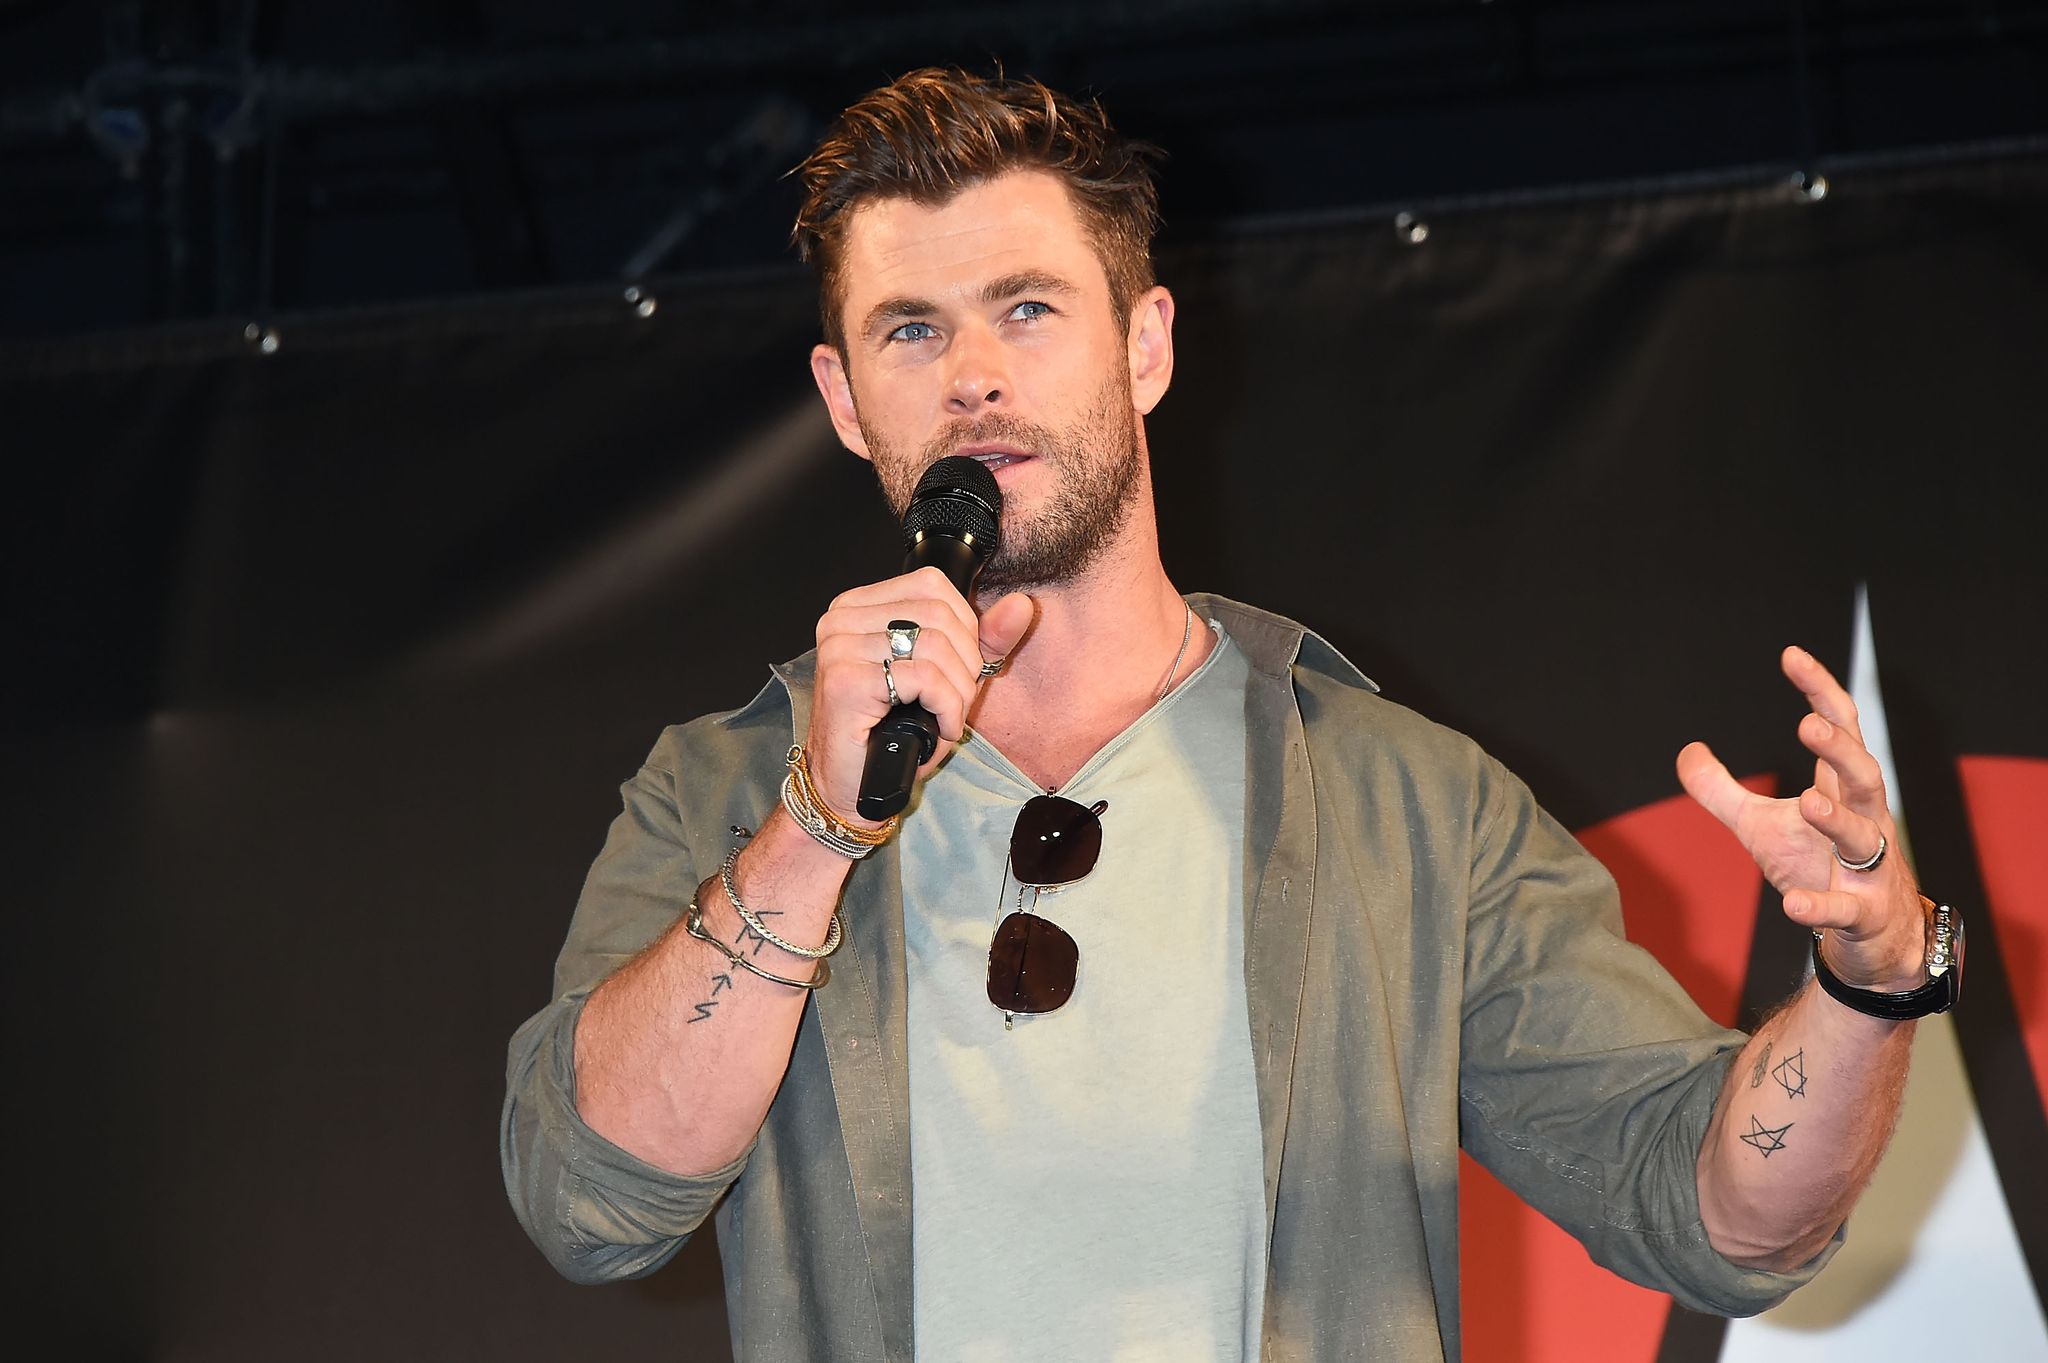 Chris Hemsworth fez teste para X-Men e G.I. Joe antes de Thor - RIC Mais